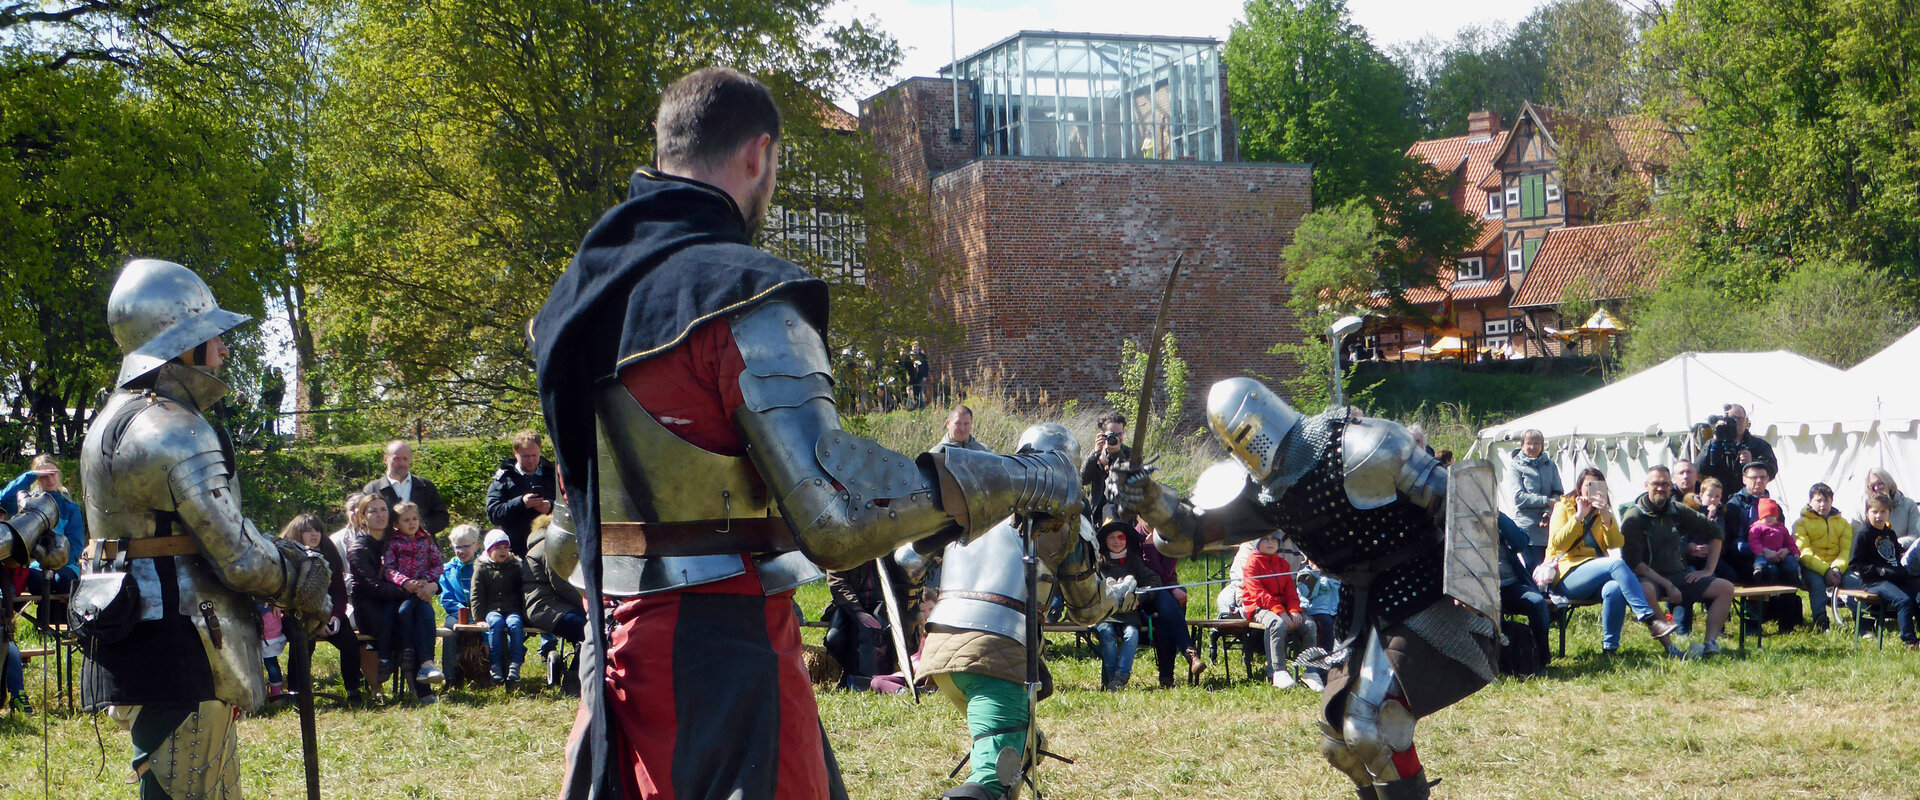 Kämpfende Ritter in Rüstungen auf dem mittelalterlichen Burgspektakel in Bad Bodenteich